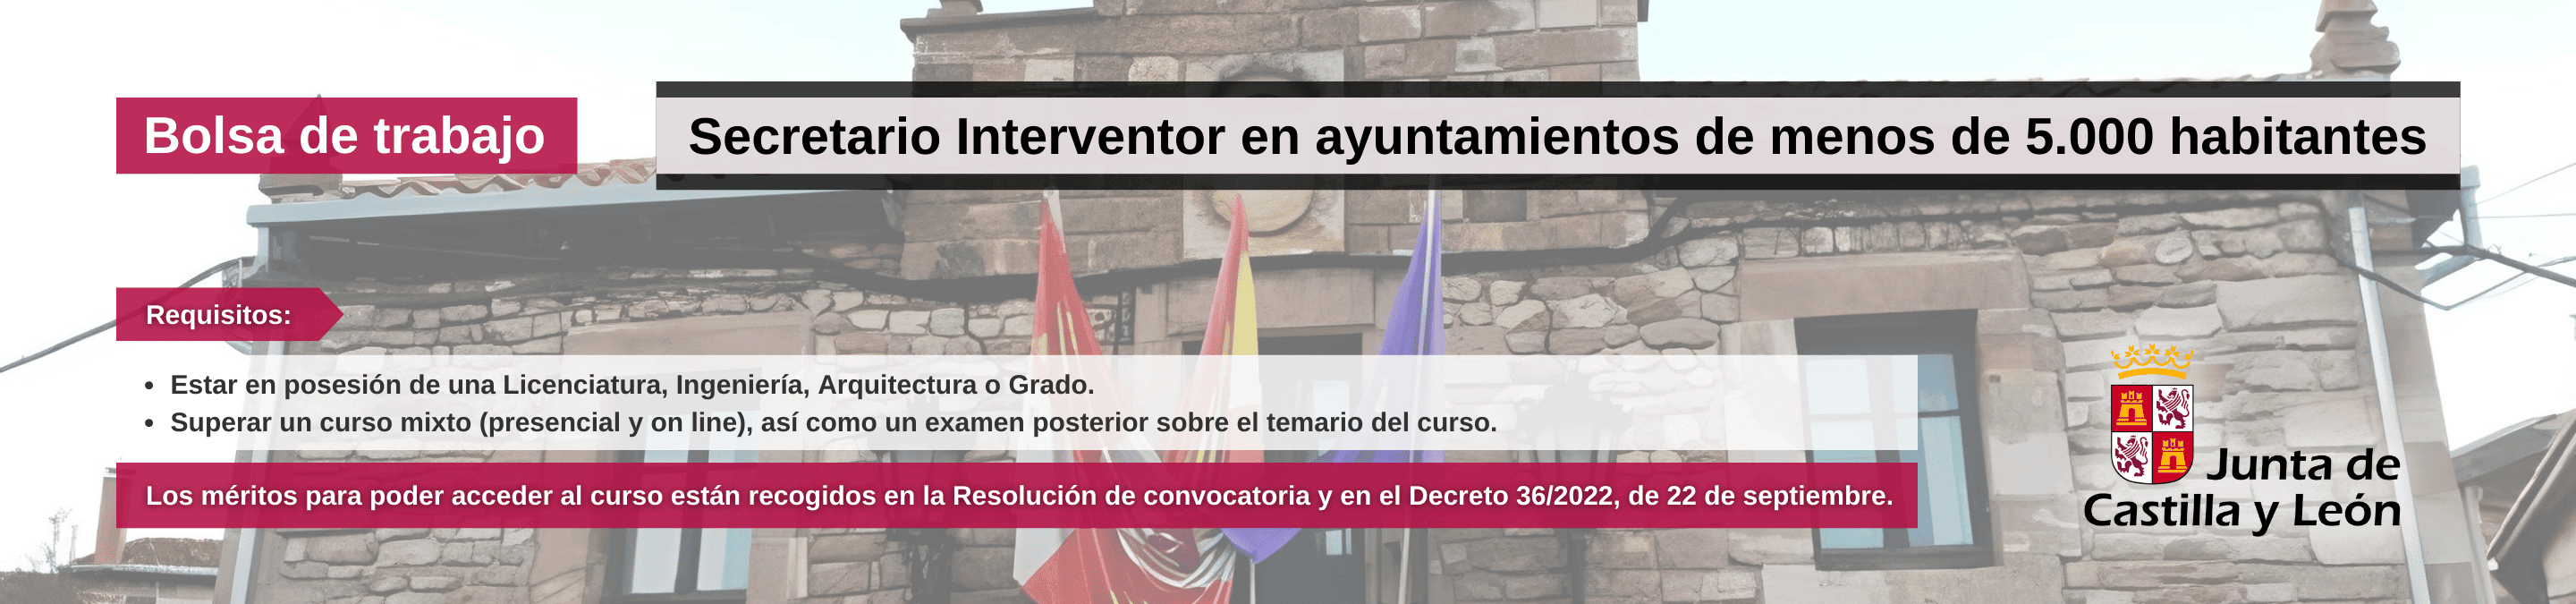 Banner bolsa trabajo secretario interventos ayuntamientos Junta CyL Funge UVa